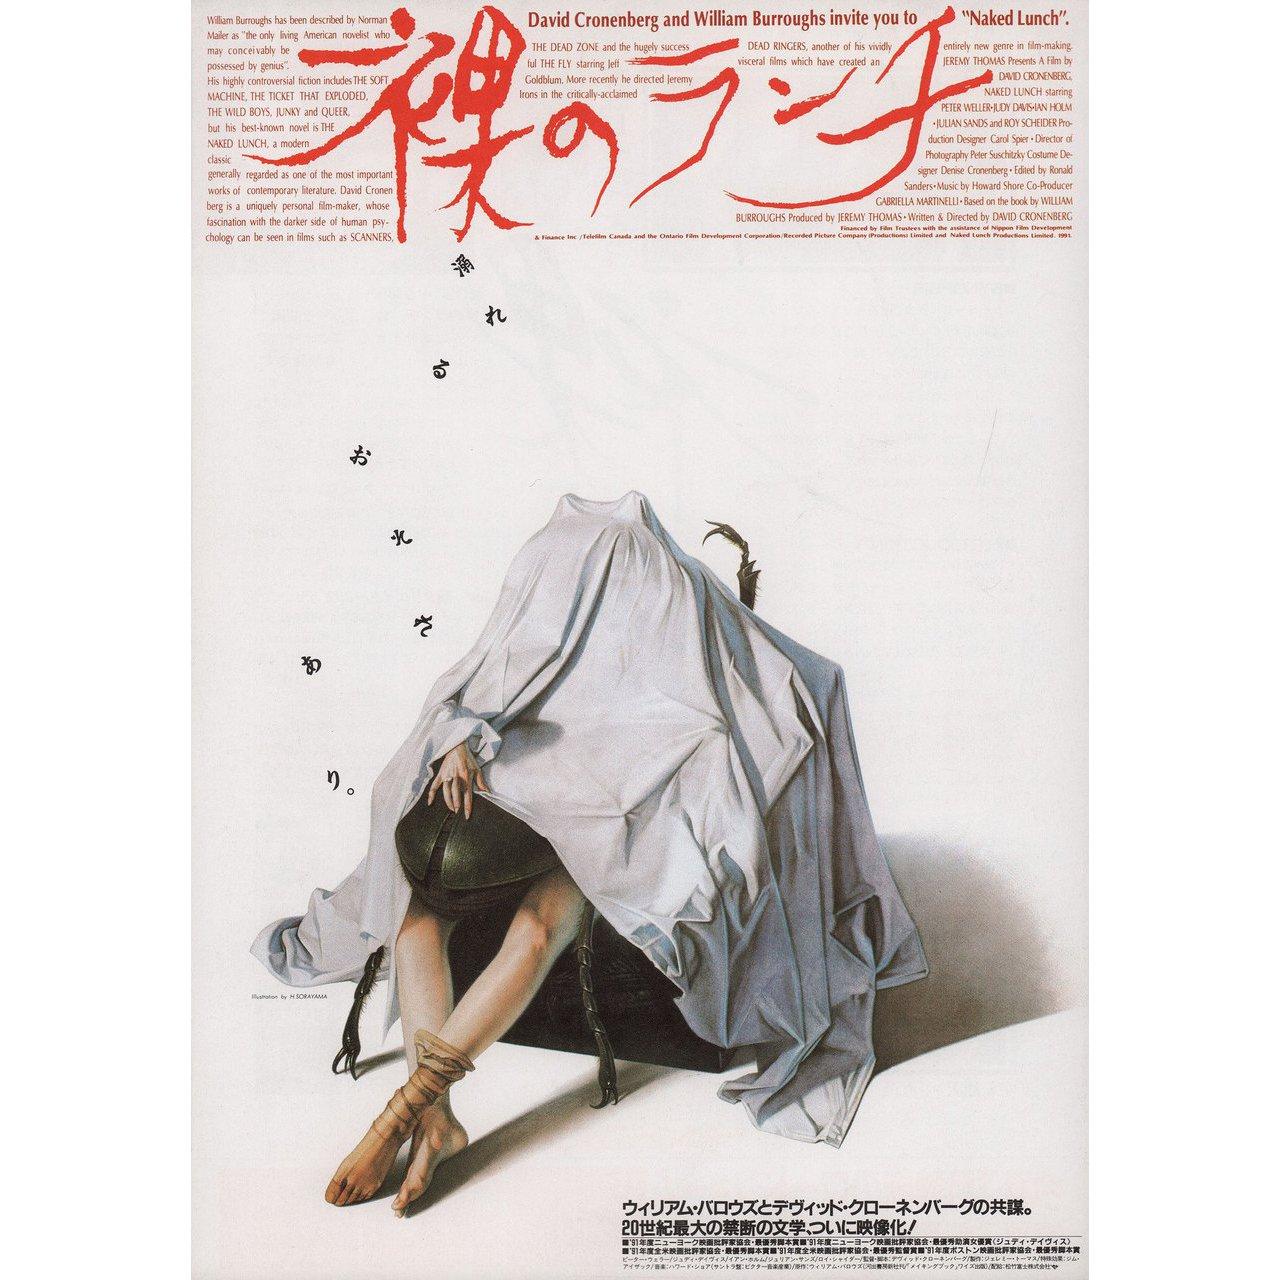 Originales japanisches B5-Chirashi-Faltblatt von Hajime Sorayama aus dem Jahr 1991 für den Film Naked Lunch unter der Regie von David Cronenberg mit Peter Weller / Judy Davis / Ian Holm / Julian Sands. Guter Zustand, gerollt. Bitte beachten Sie: Die